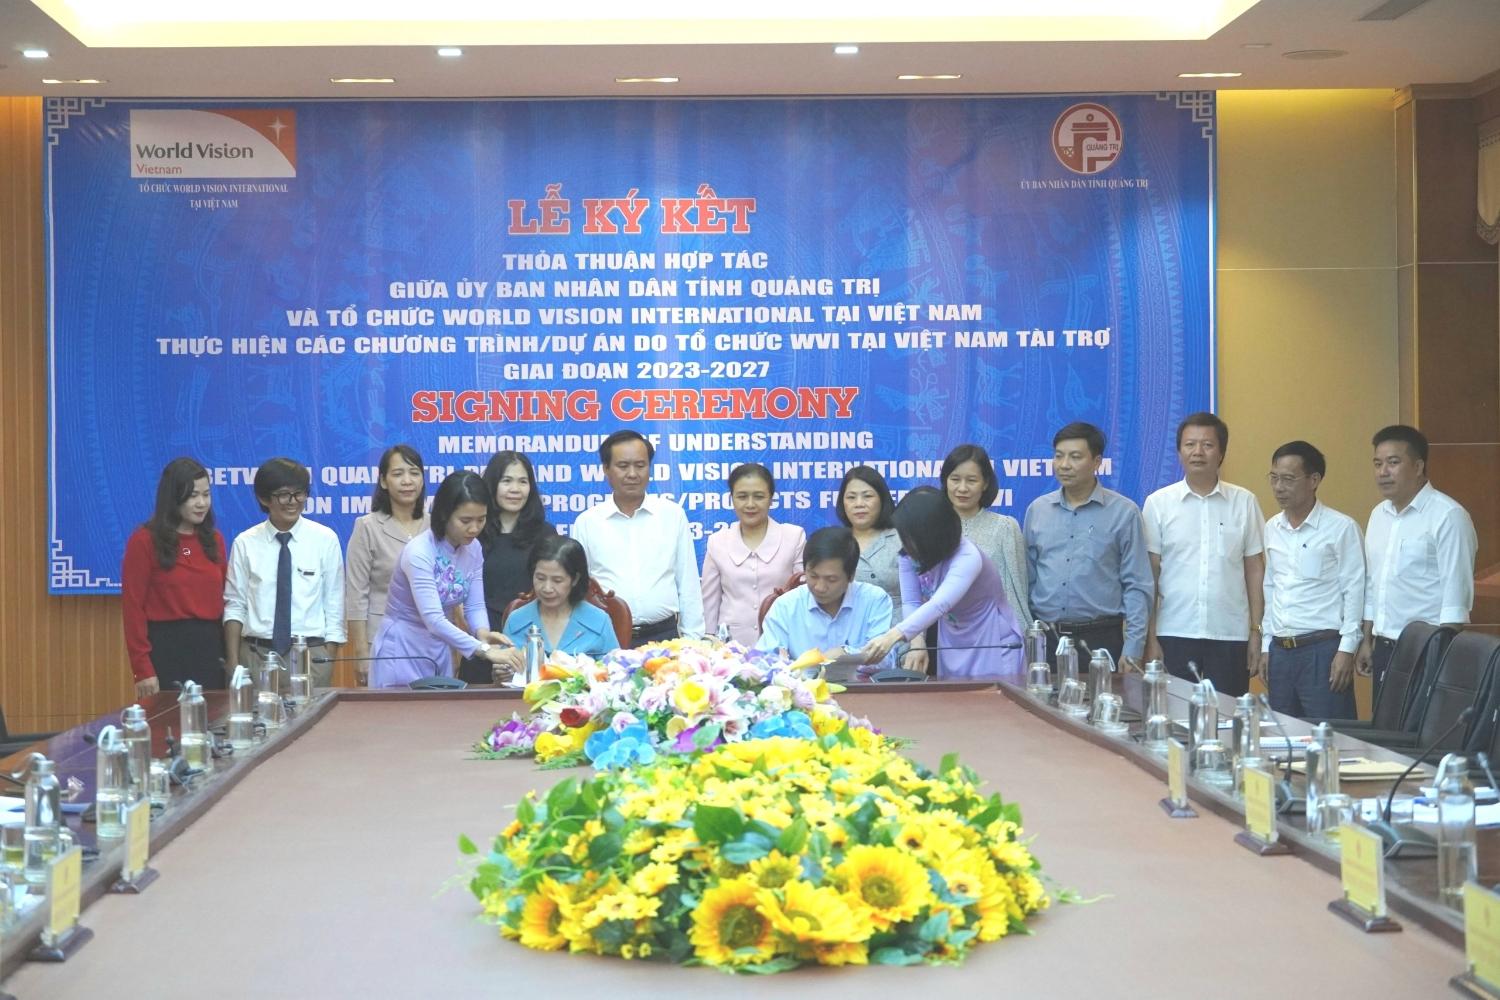 Ký kết thỏa thuận hợp tác giữa UBND tỉnh Quảng Trị và tổ chức World Vision International tại Việt...